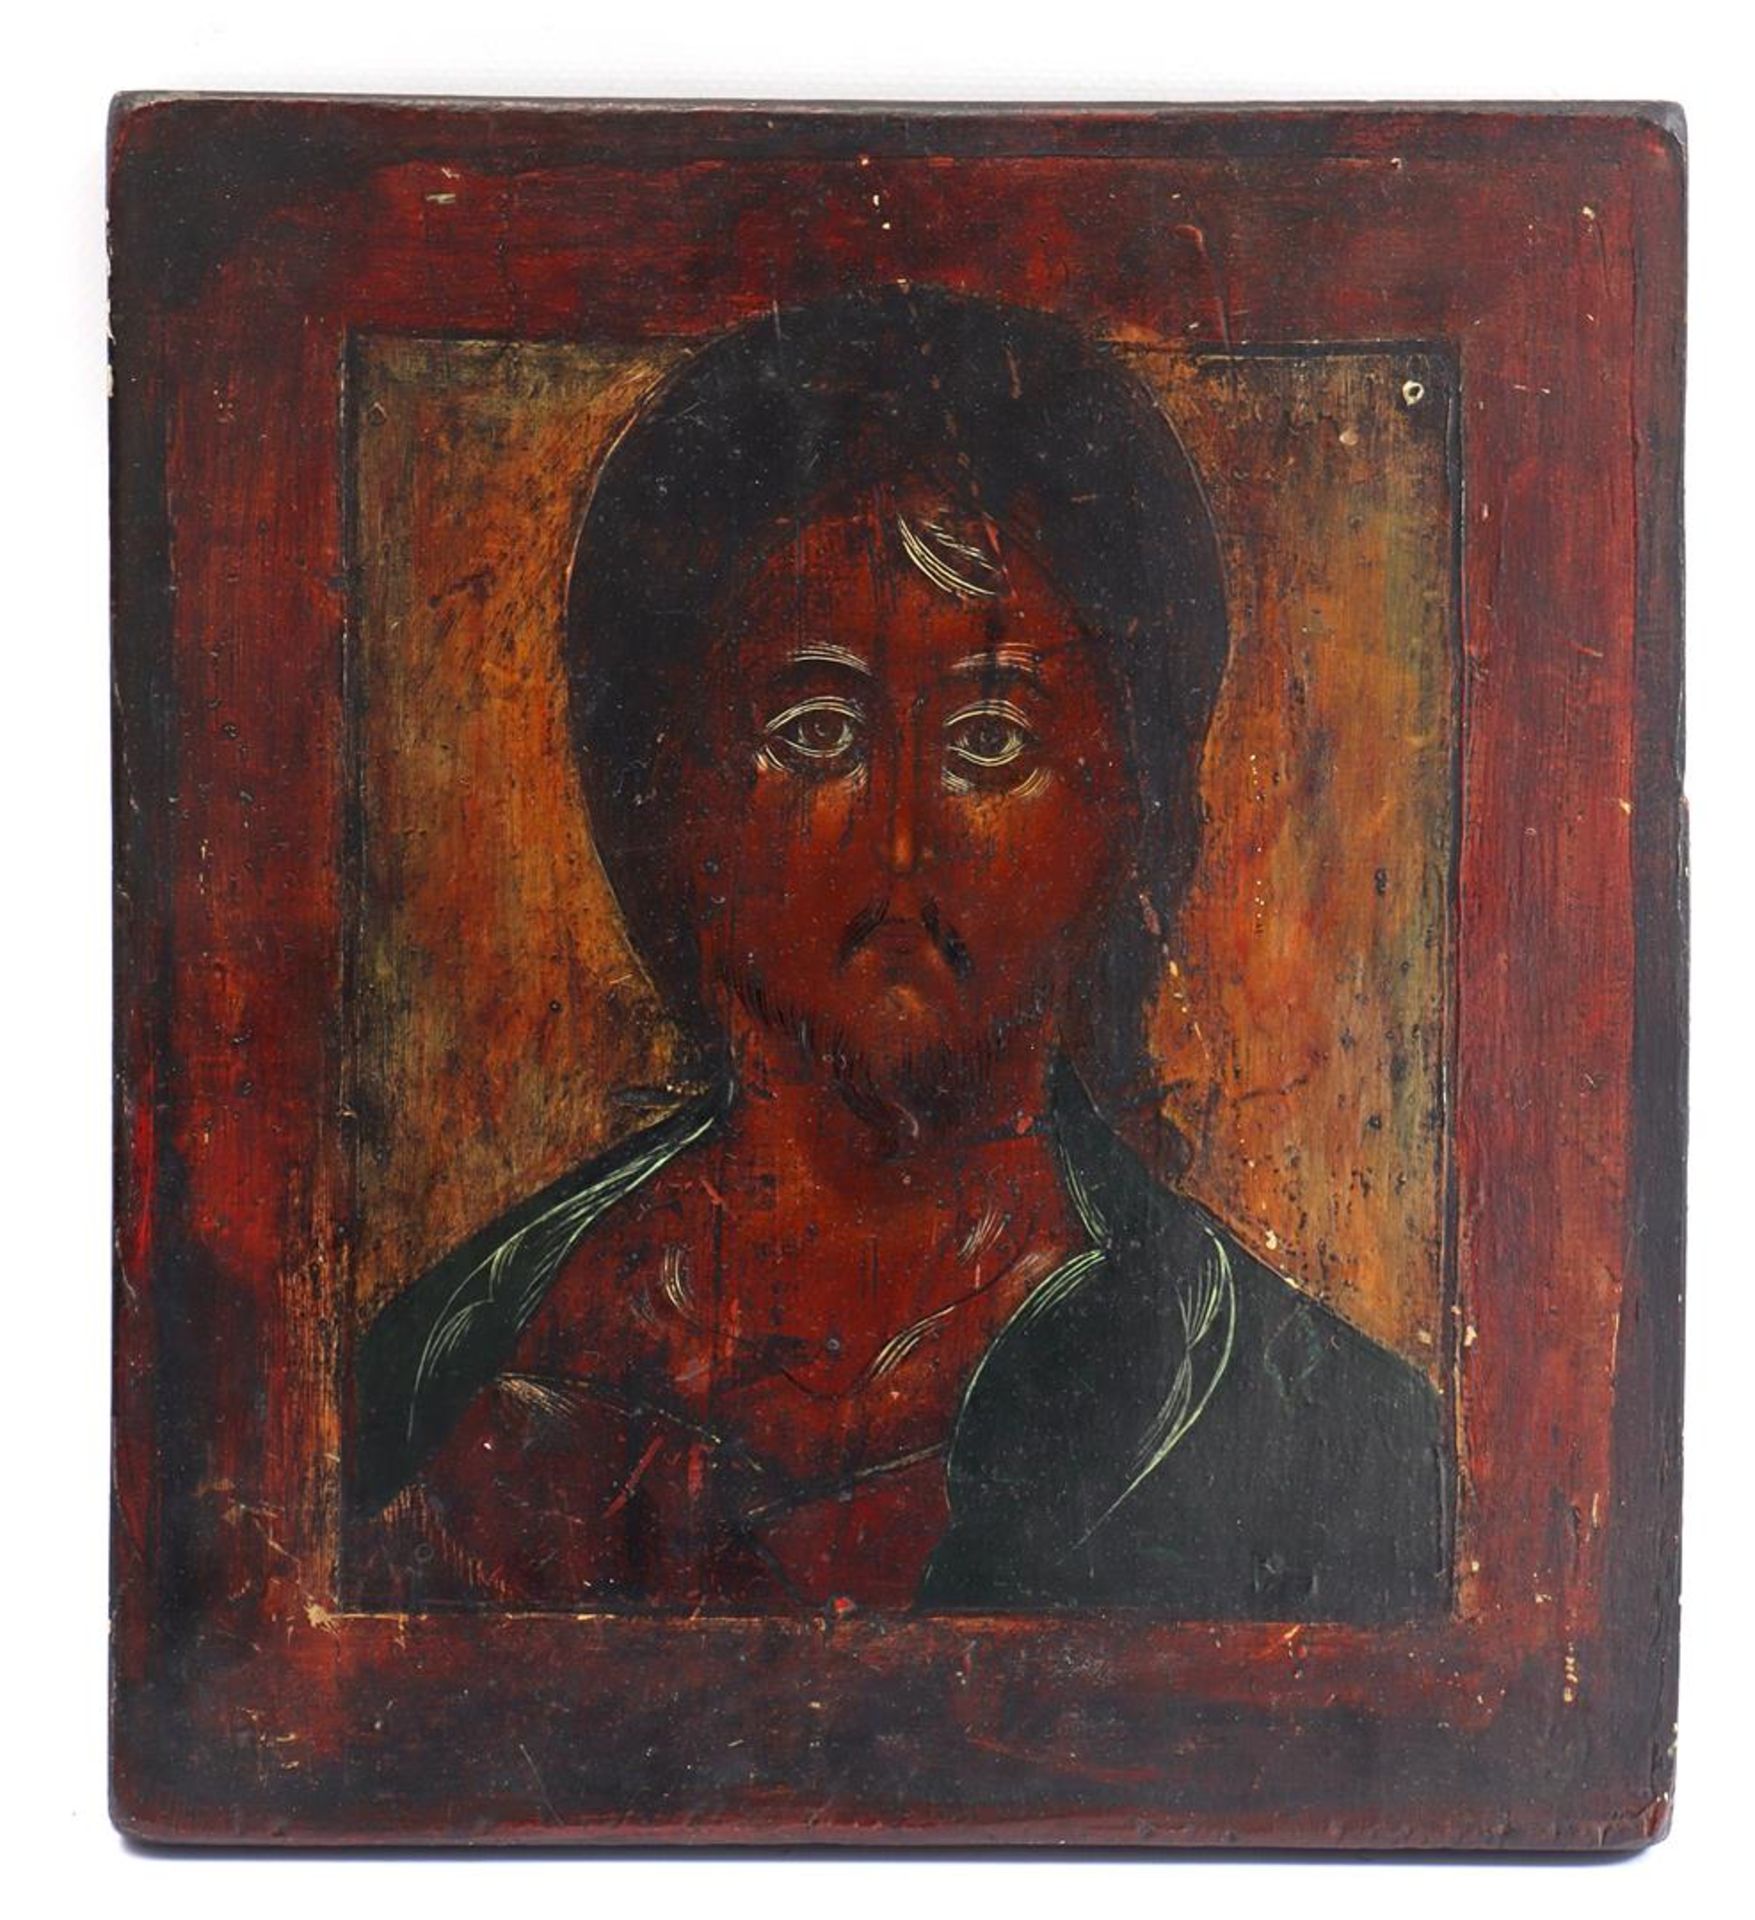 Icon of a dark representation of Jesus, Russia